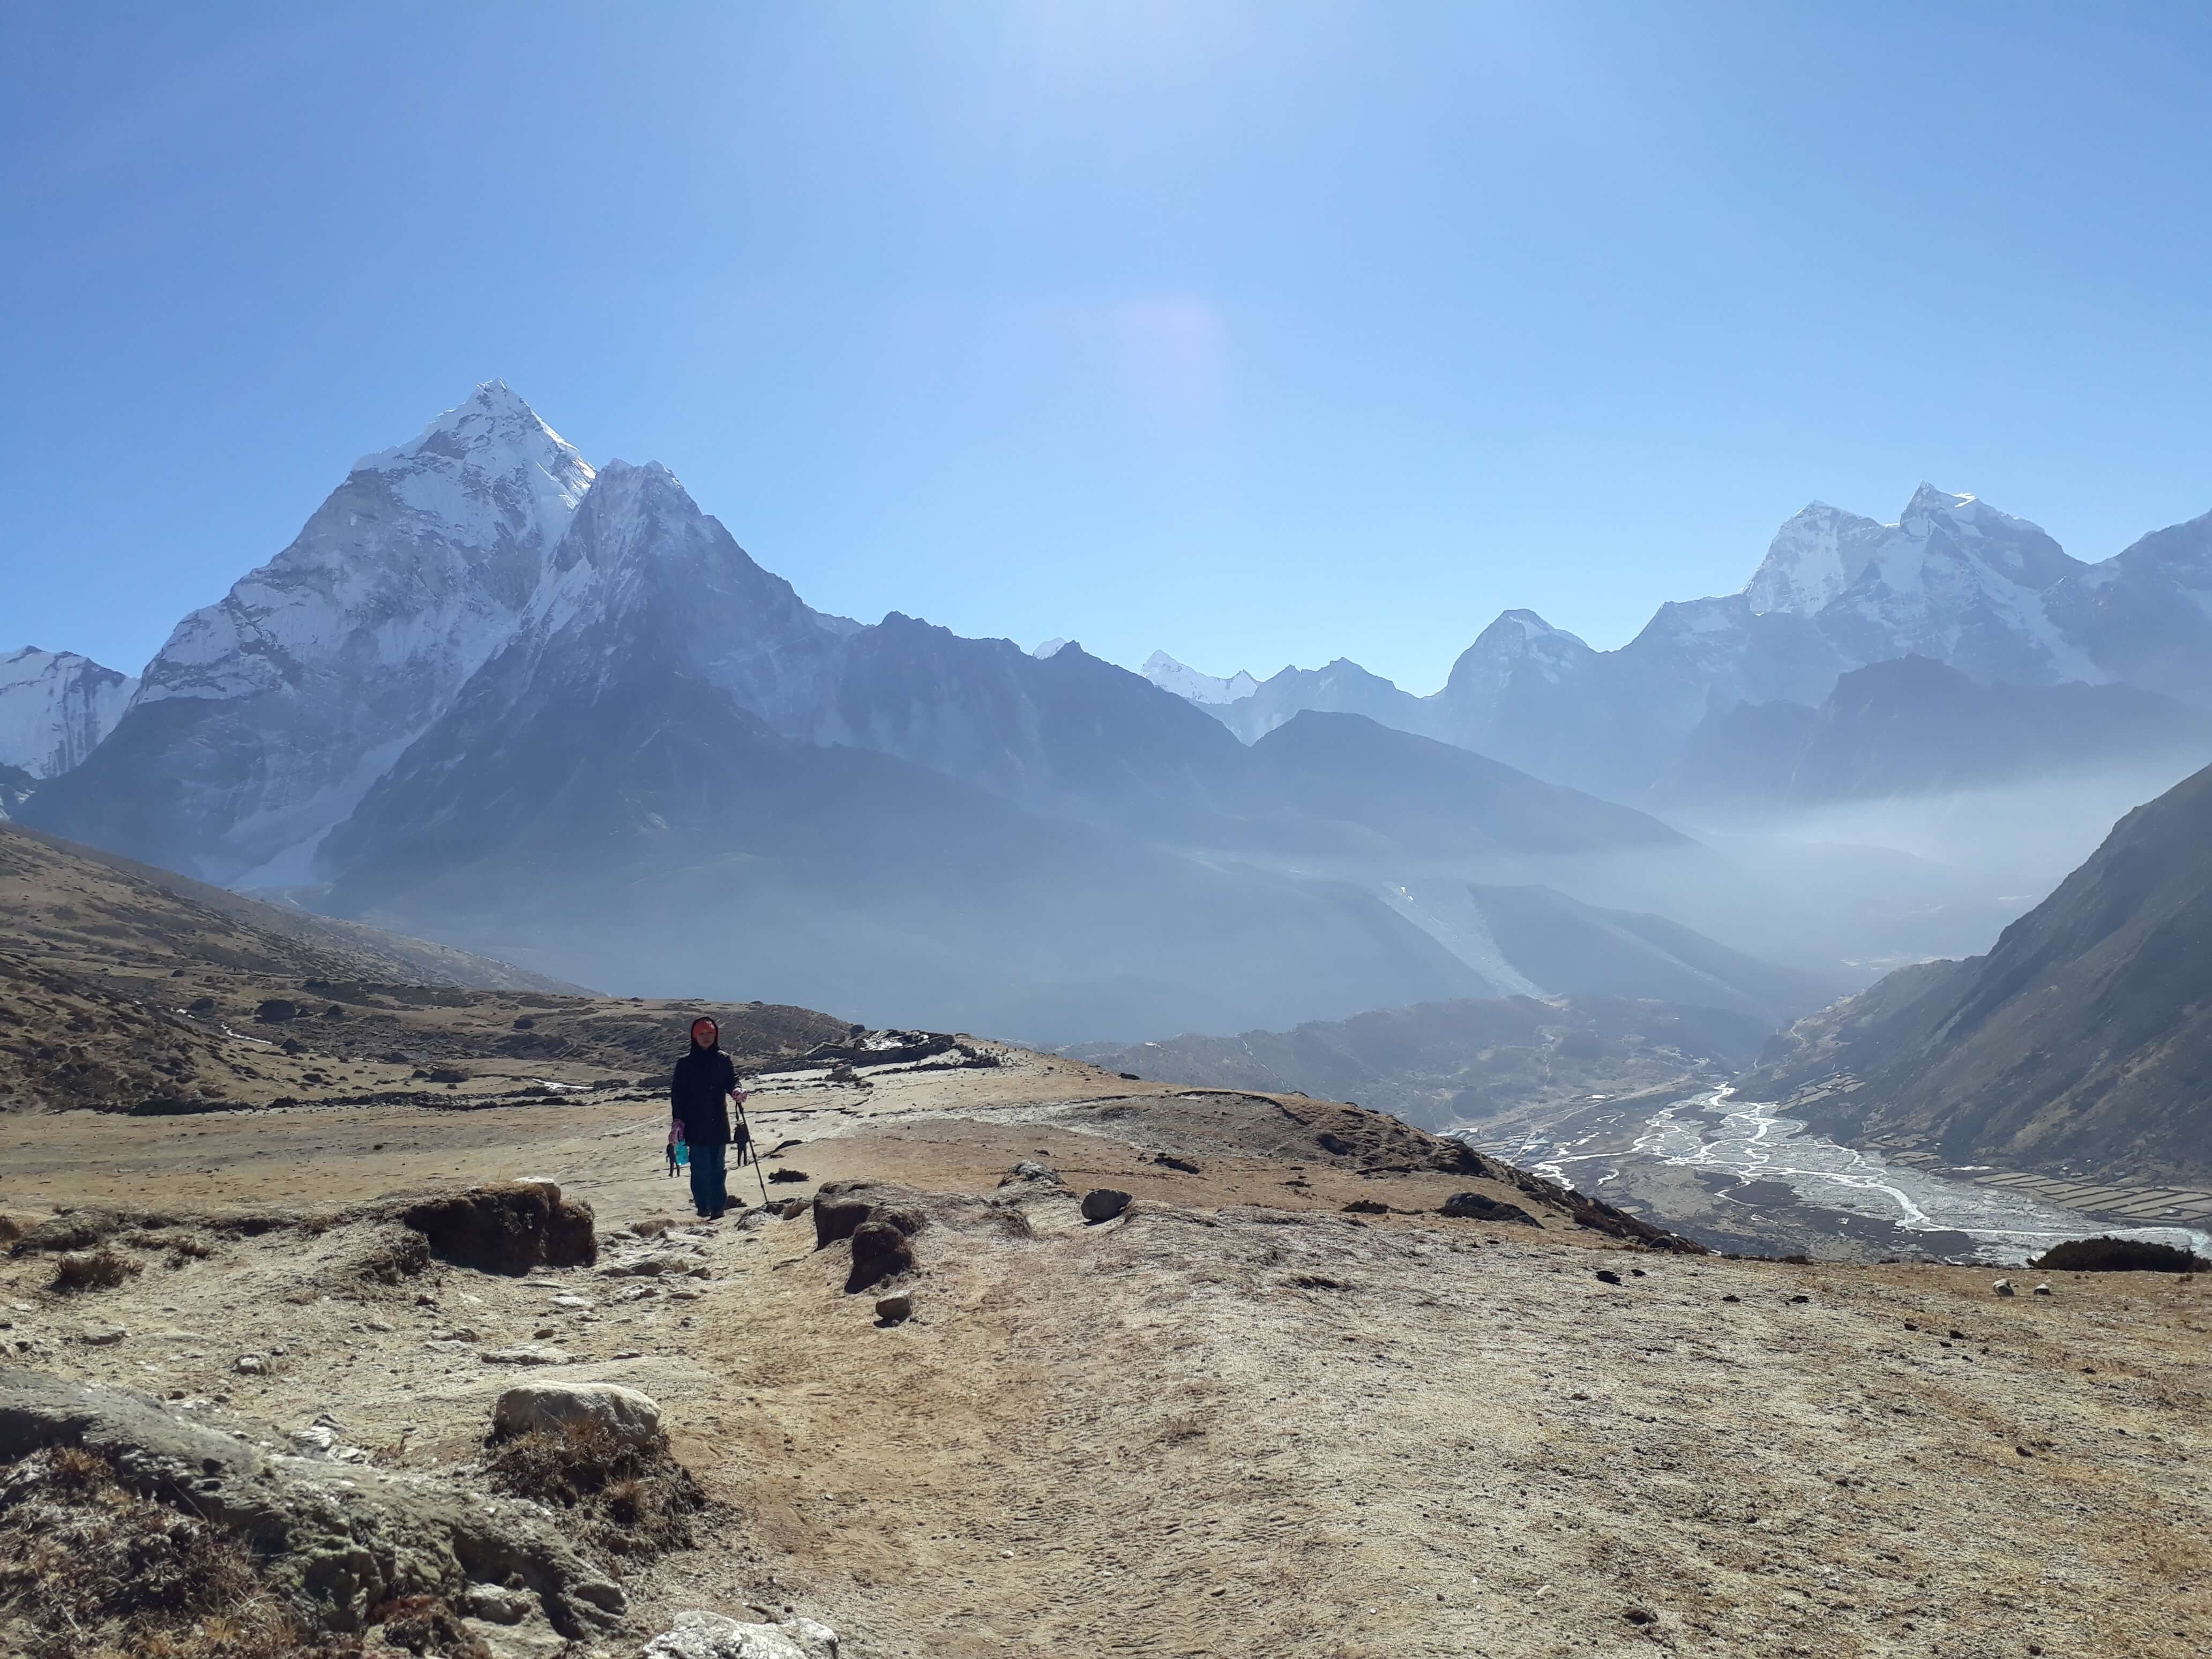 Wild Mountains of Everest Region